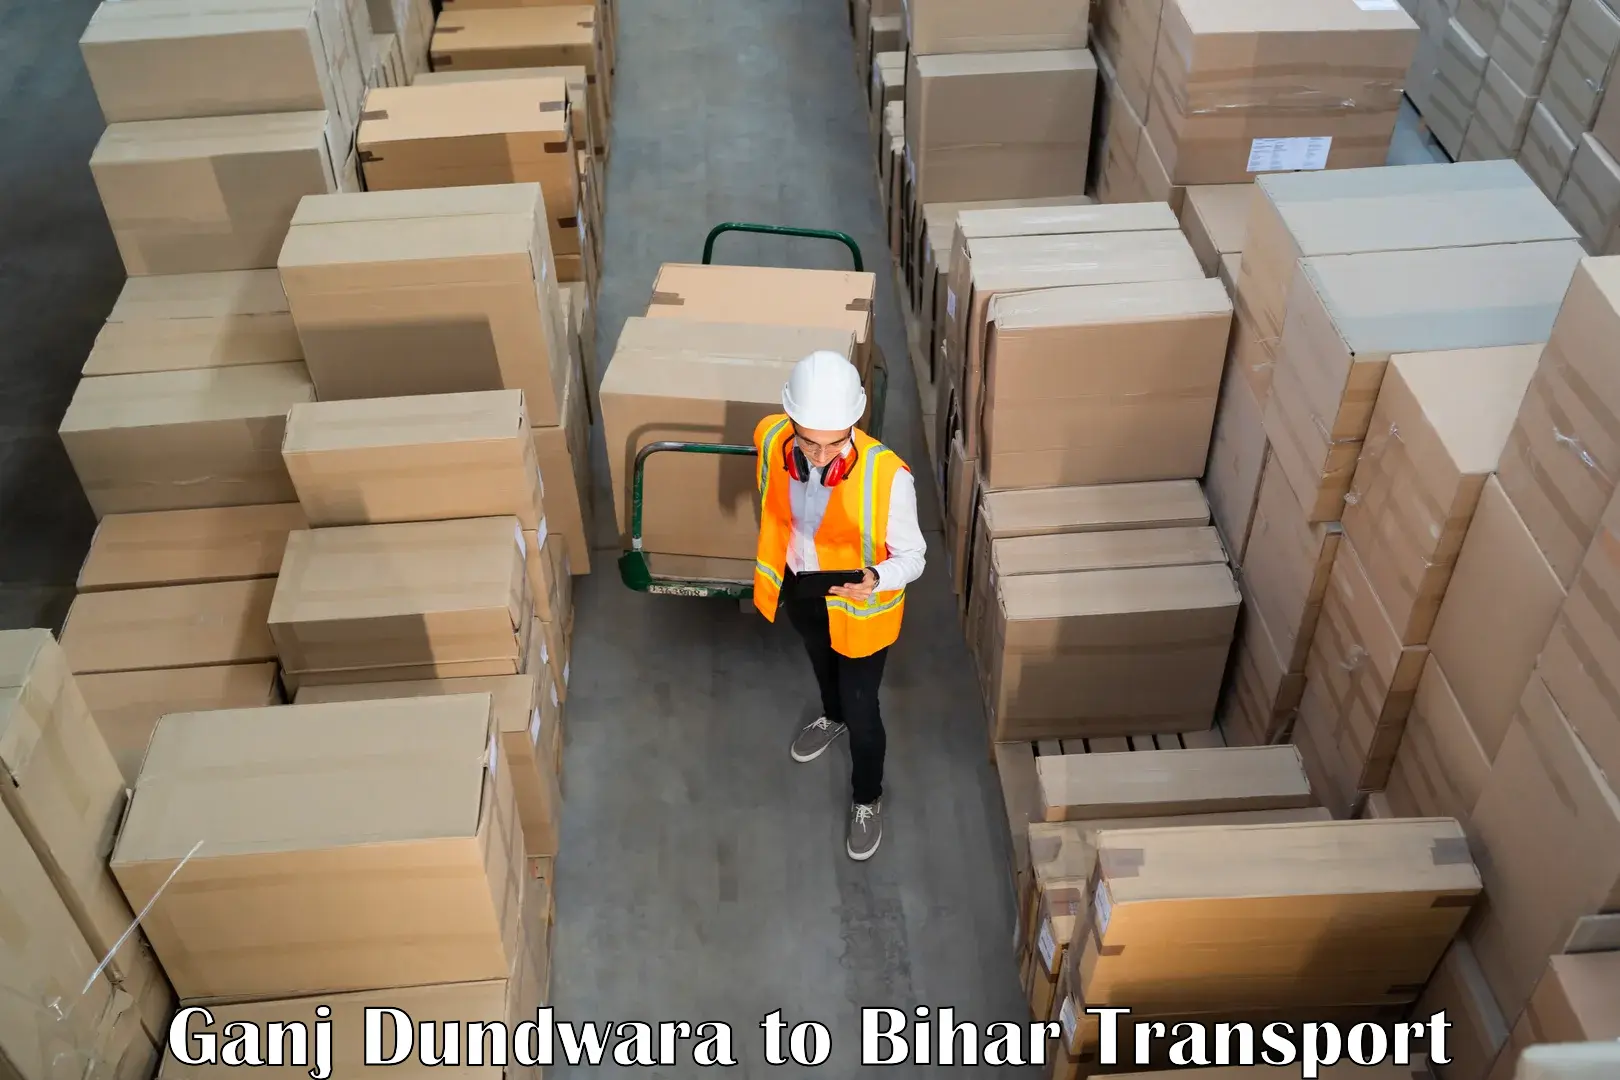 Luggage transport services Ganj Dundwara to Barbigha